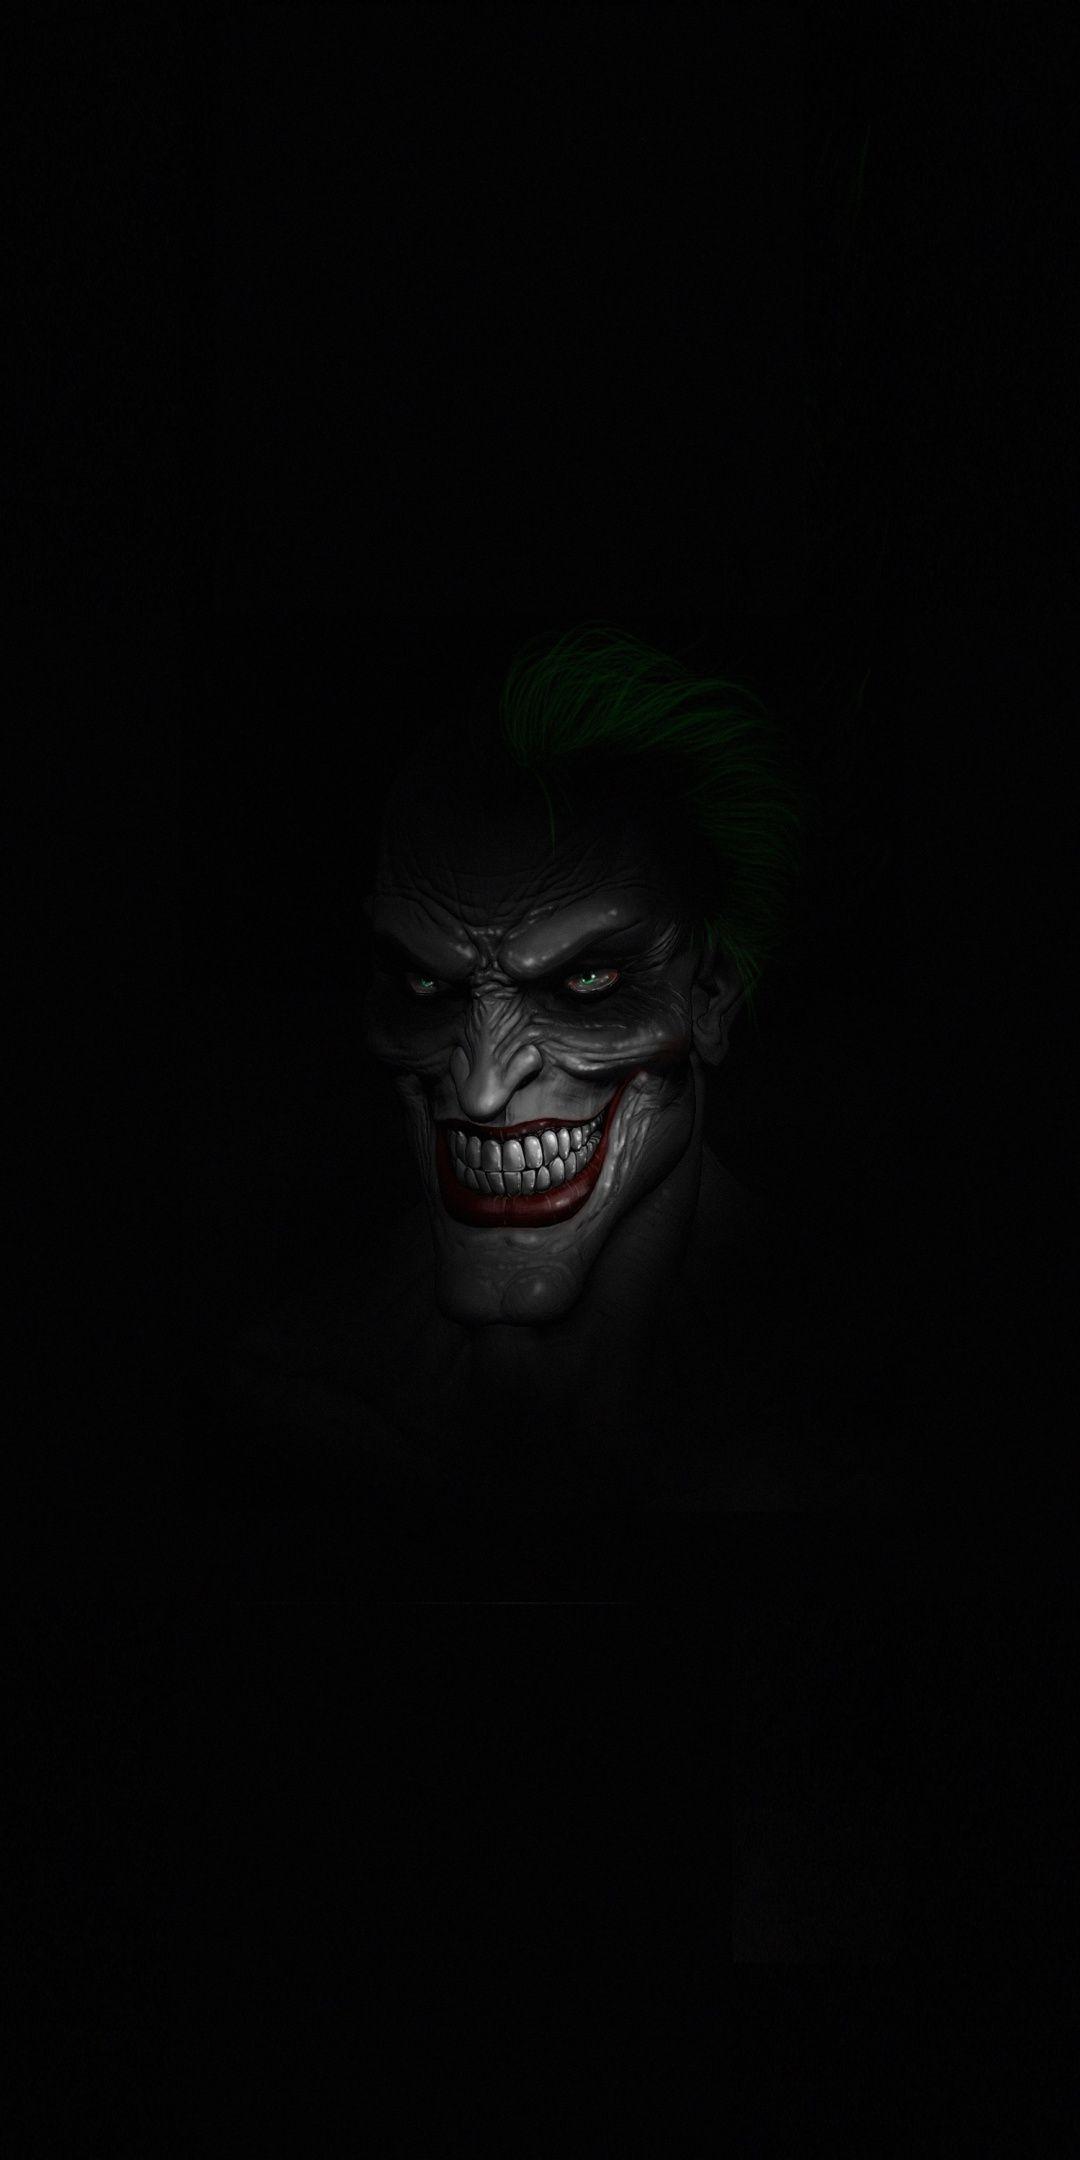 Joker's face, dark, minimal, 1080x2160 wallpaper. Batman